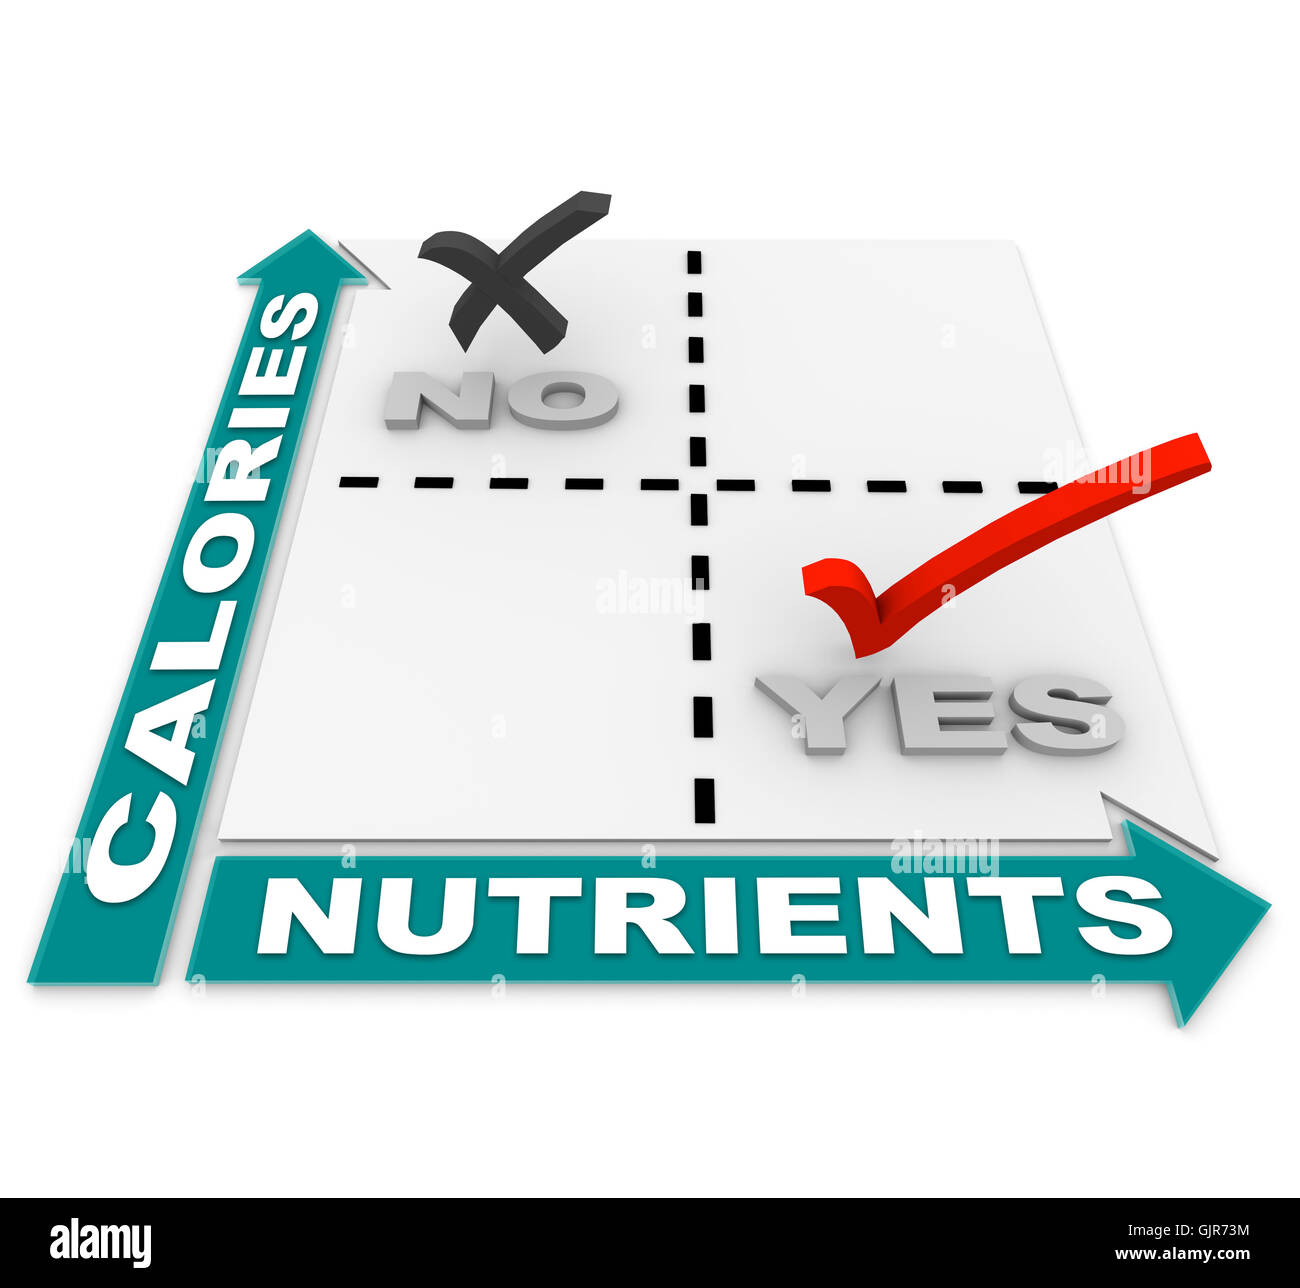 Nutrizione vs calorie Matrix - la dieta dei migliori prodotti alimentari Foto Stock